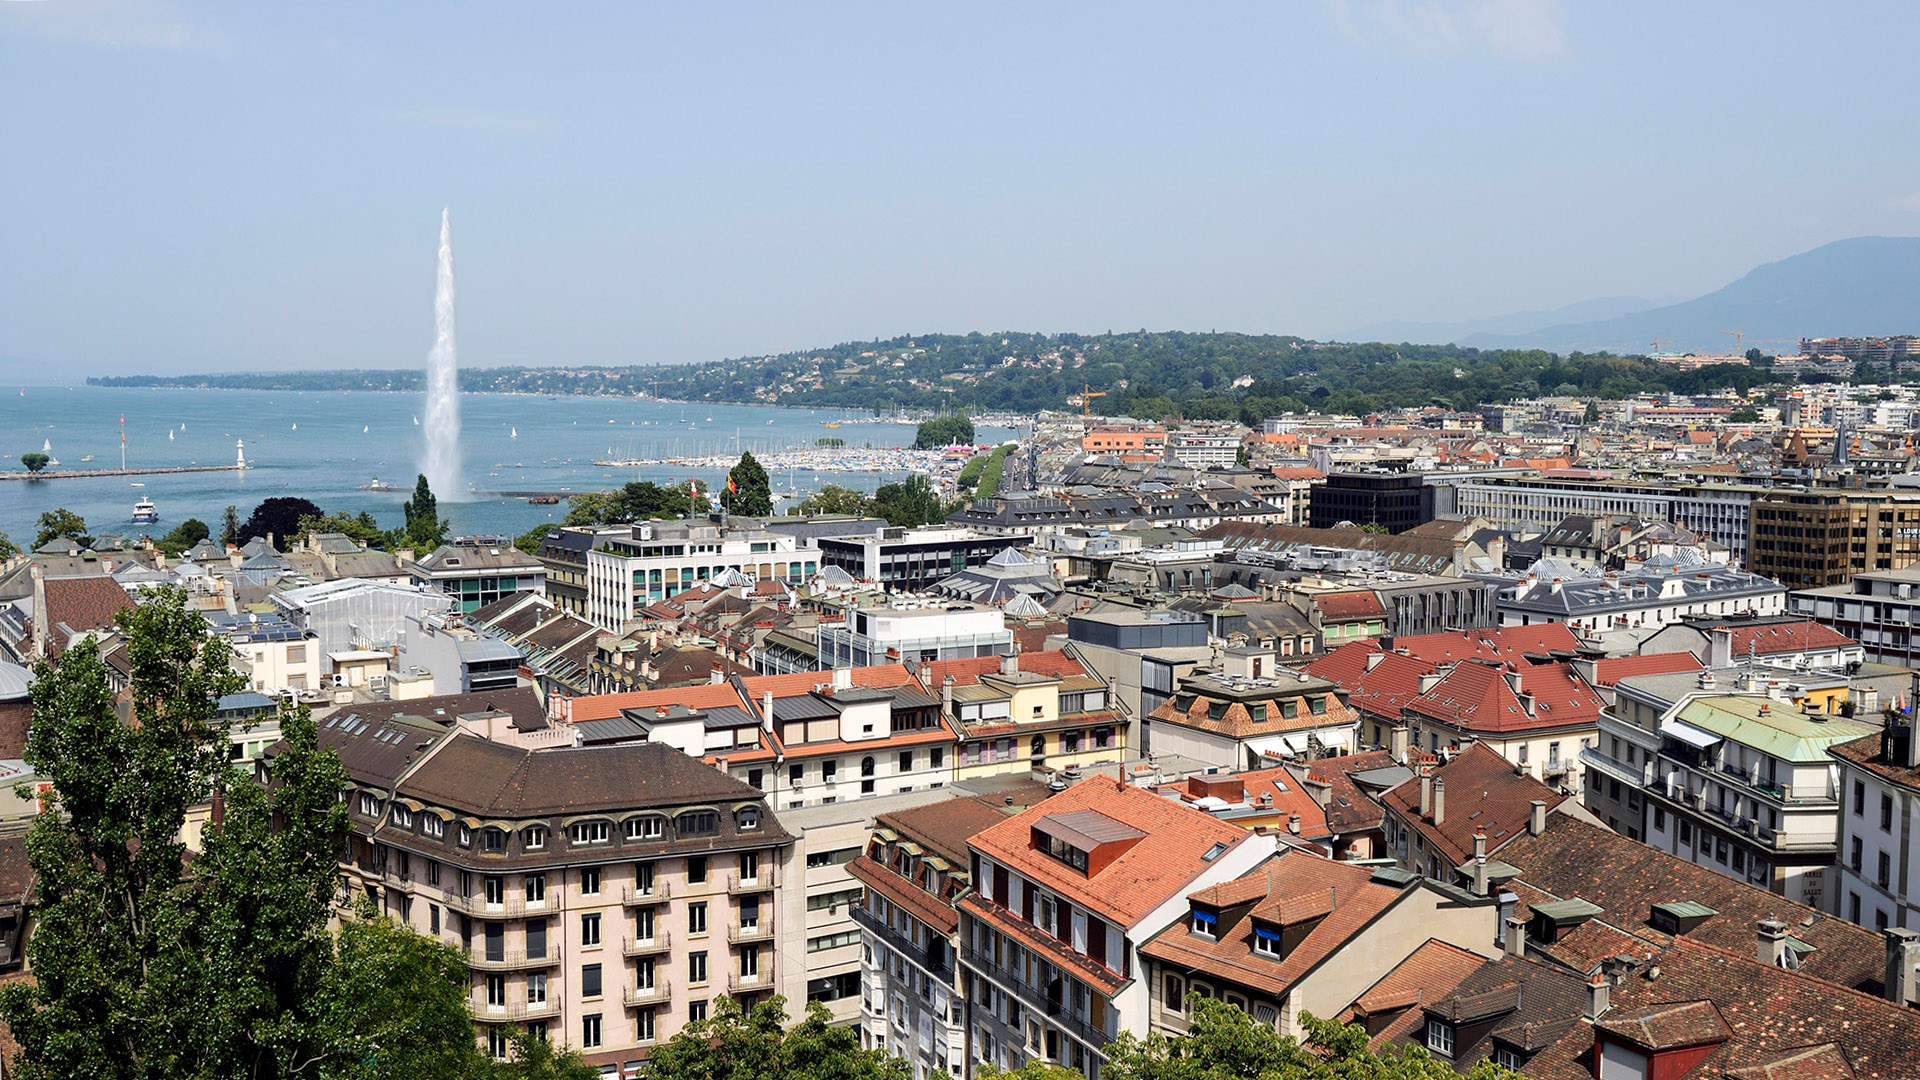 Stadtansicht Genf | picture alliance / imageBROKER